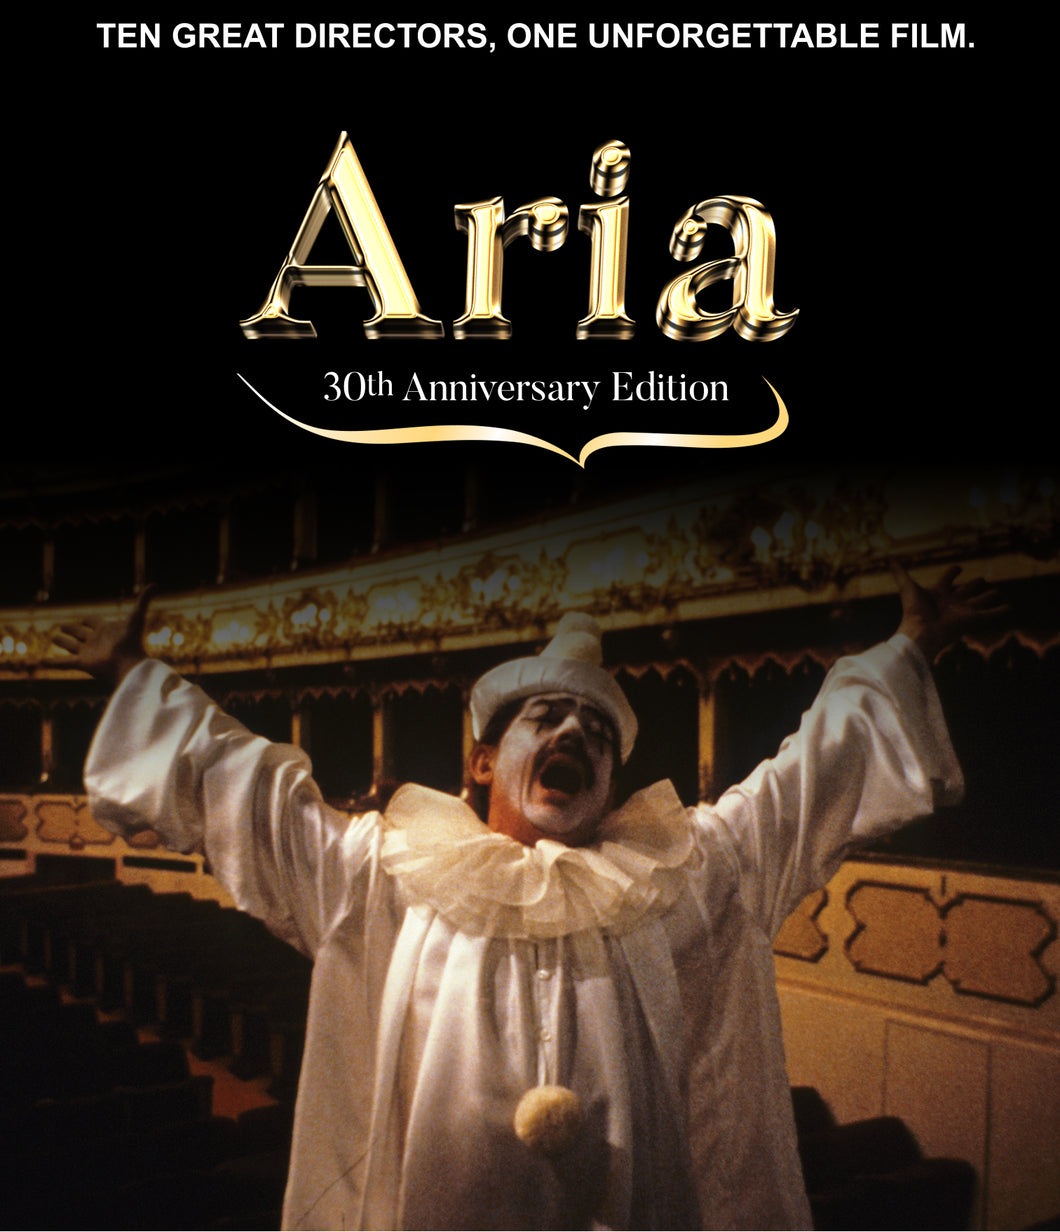 Aria (Blu-ray)